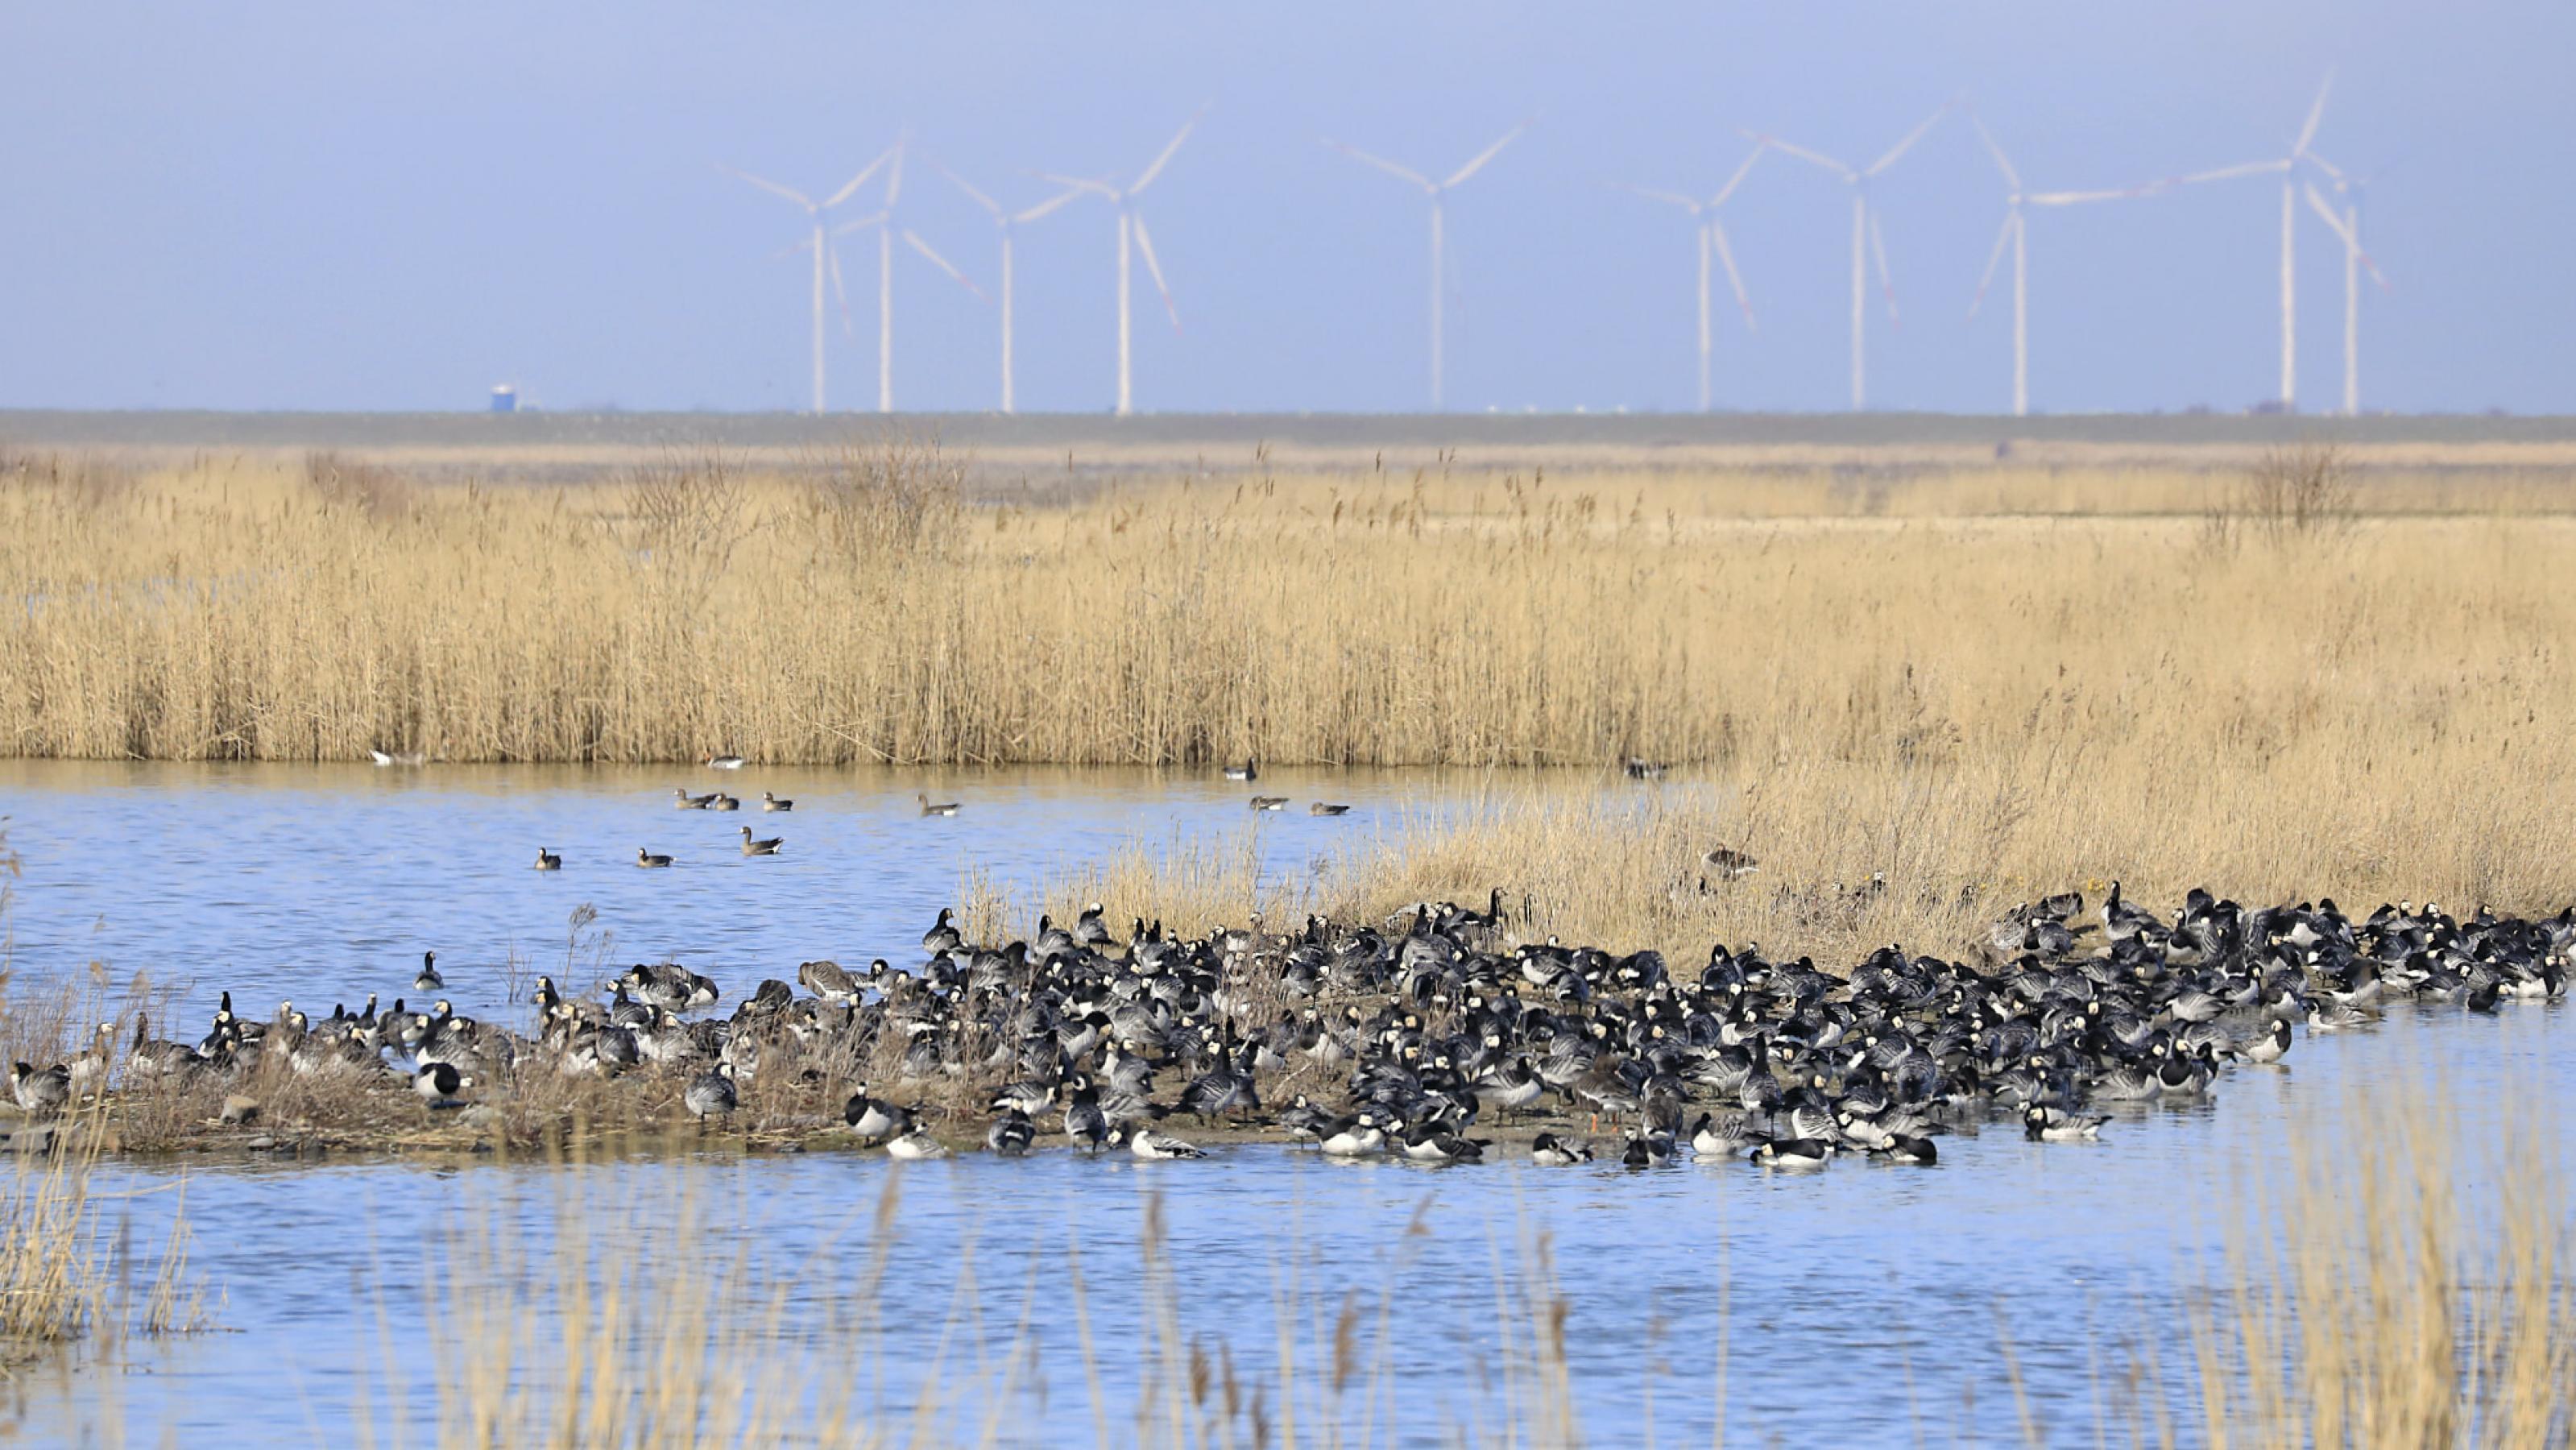 Eine Gruppe von Gänsen sitzt auf einer Landzunge, umgeben von Wasser. Im Hintergrund steht Riet vor einer Reihe von Windrädern am Horizont.